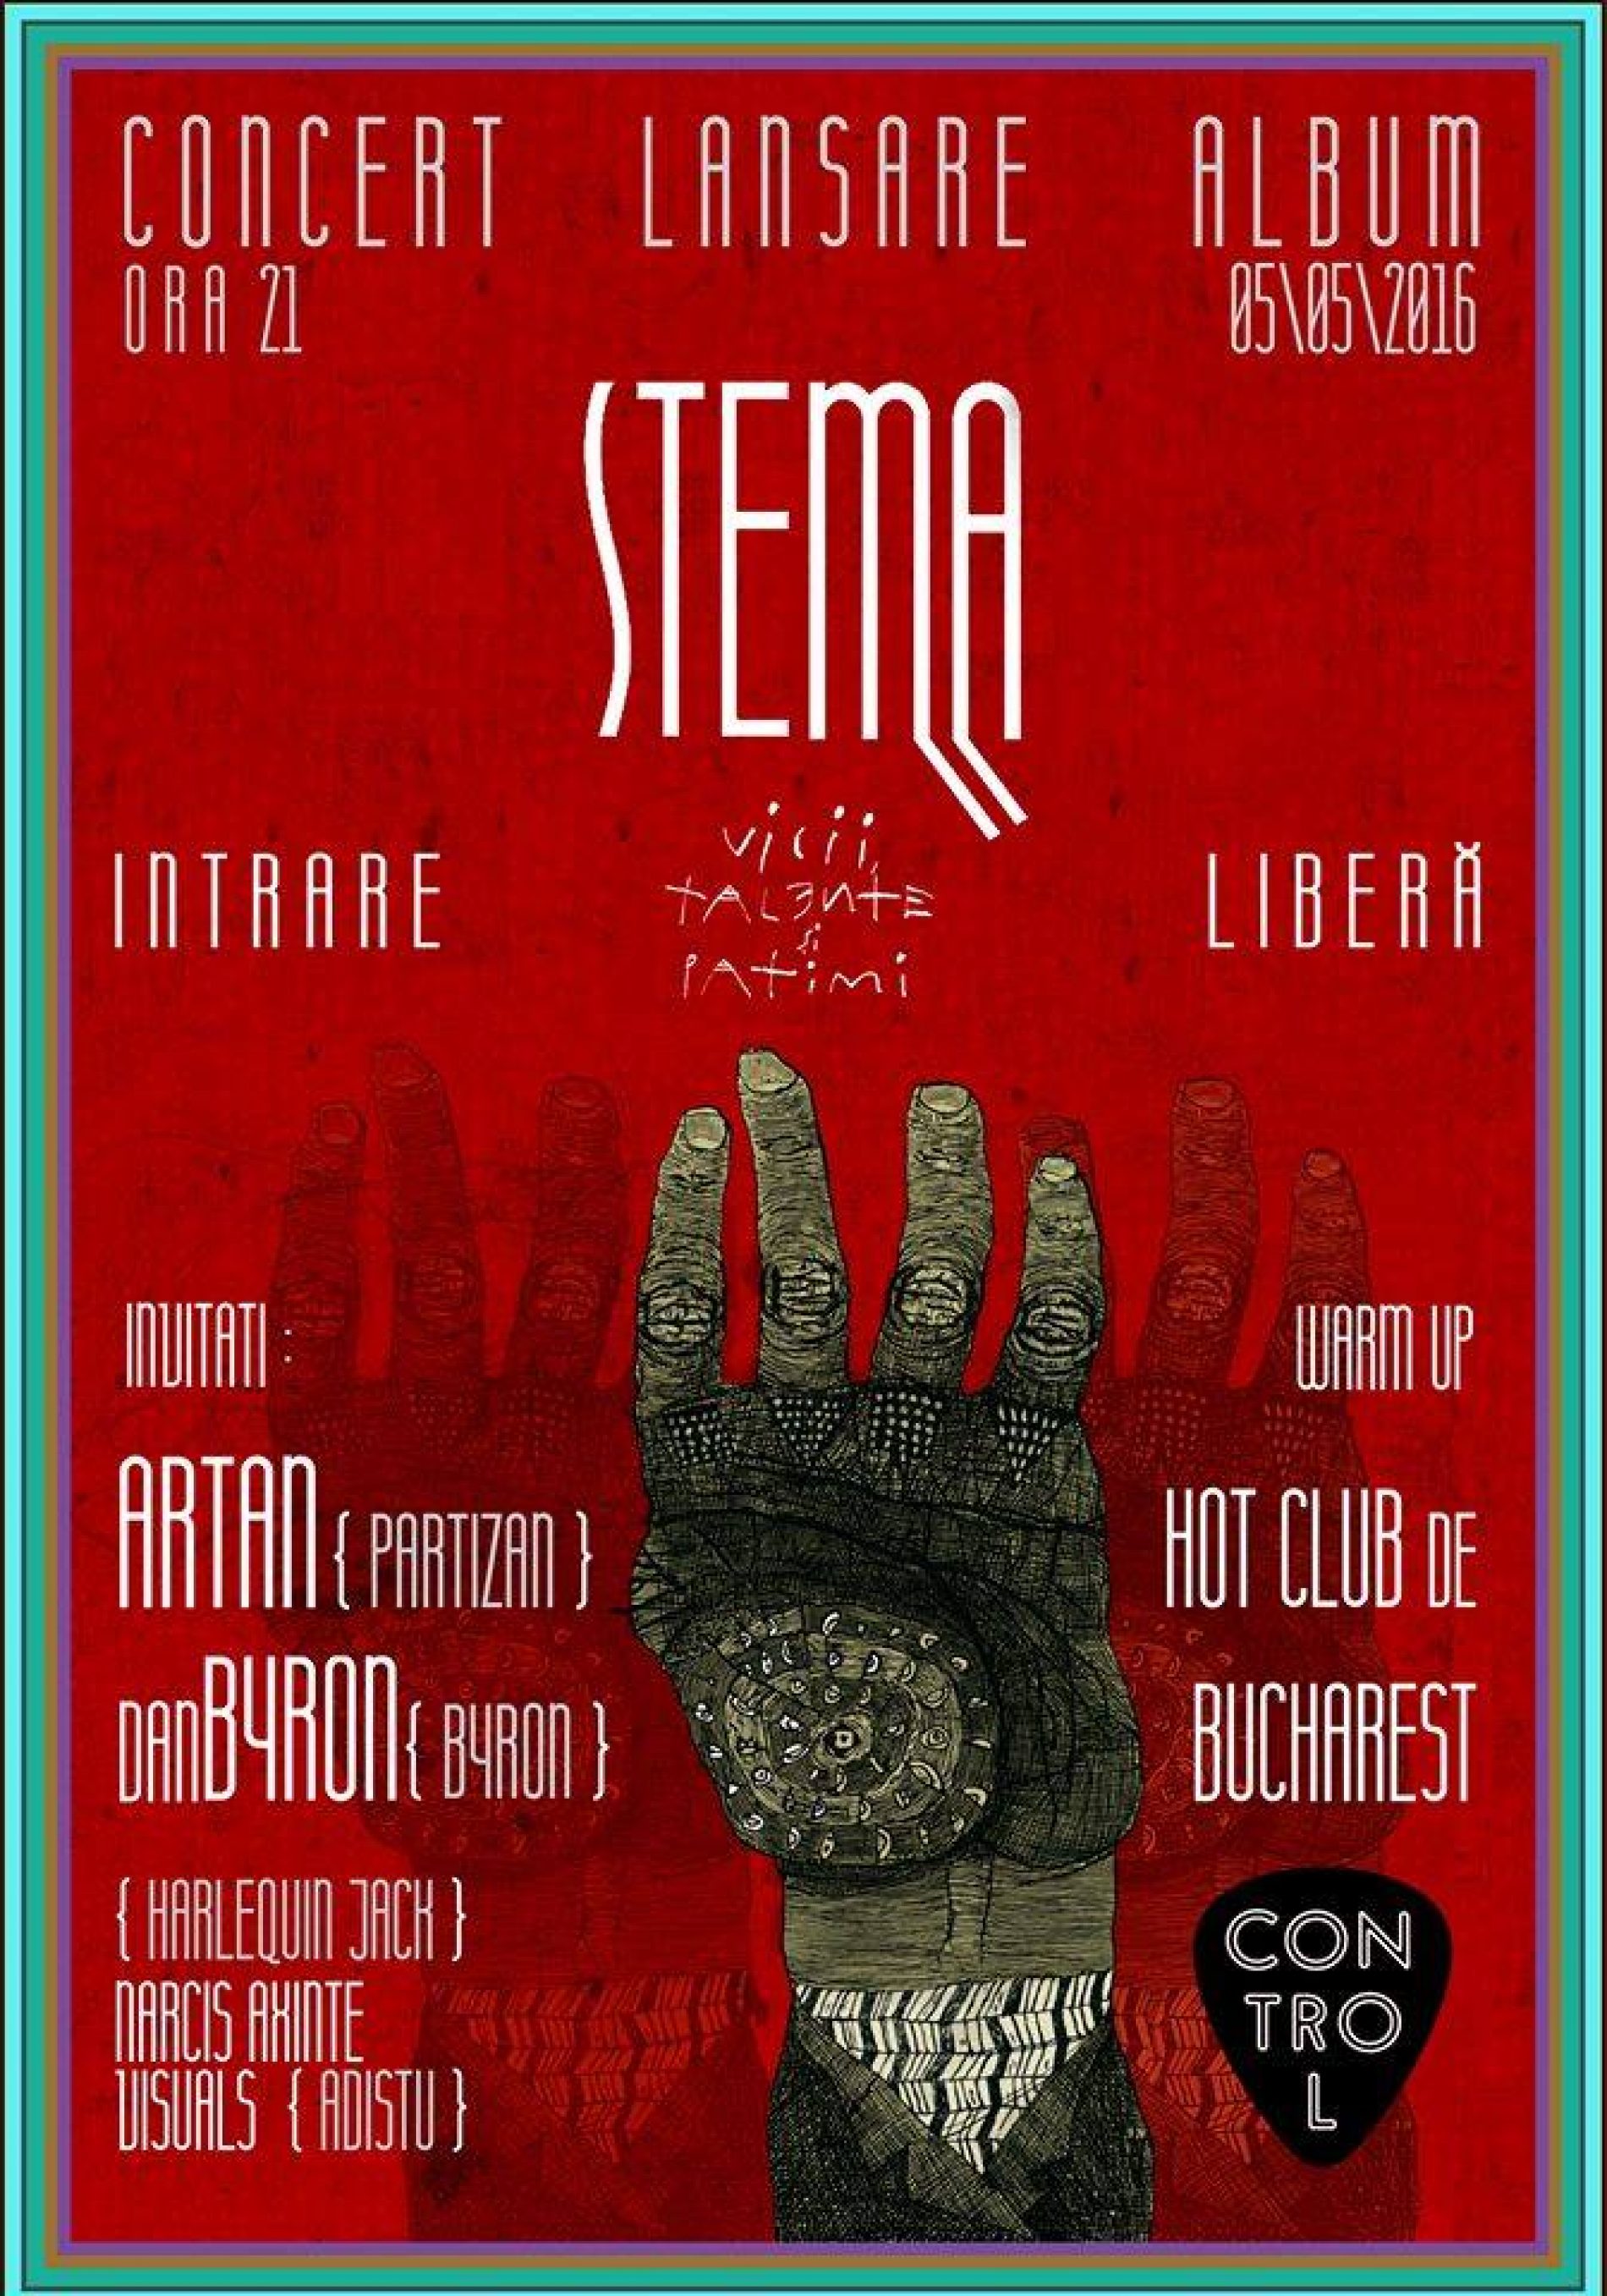 Concert lansare album STEMA: Artan, Dan Byron si Narcis Axinte (Harlequin_Jack) invitati